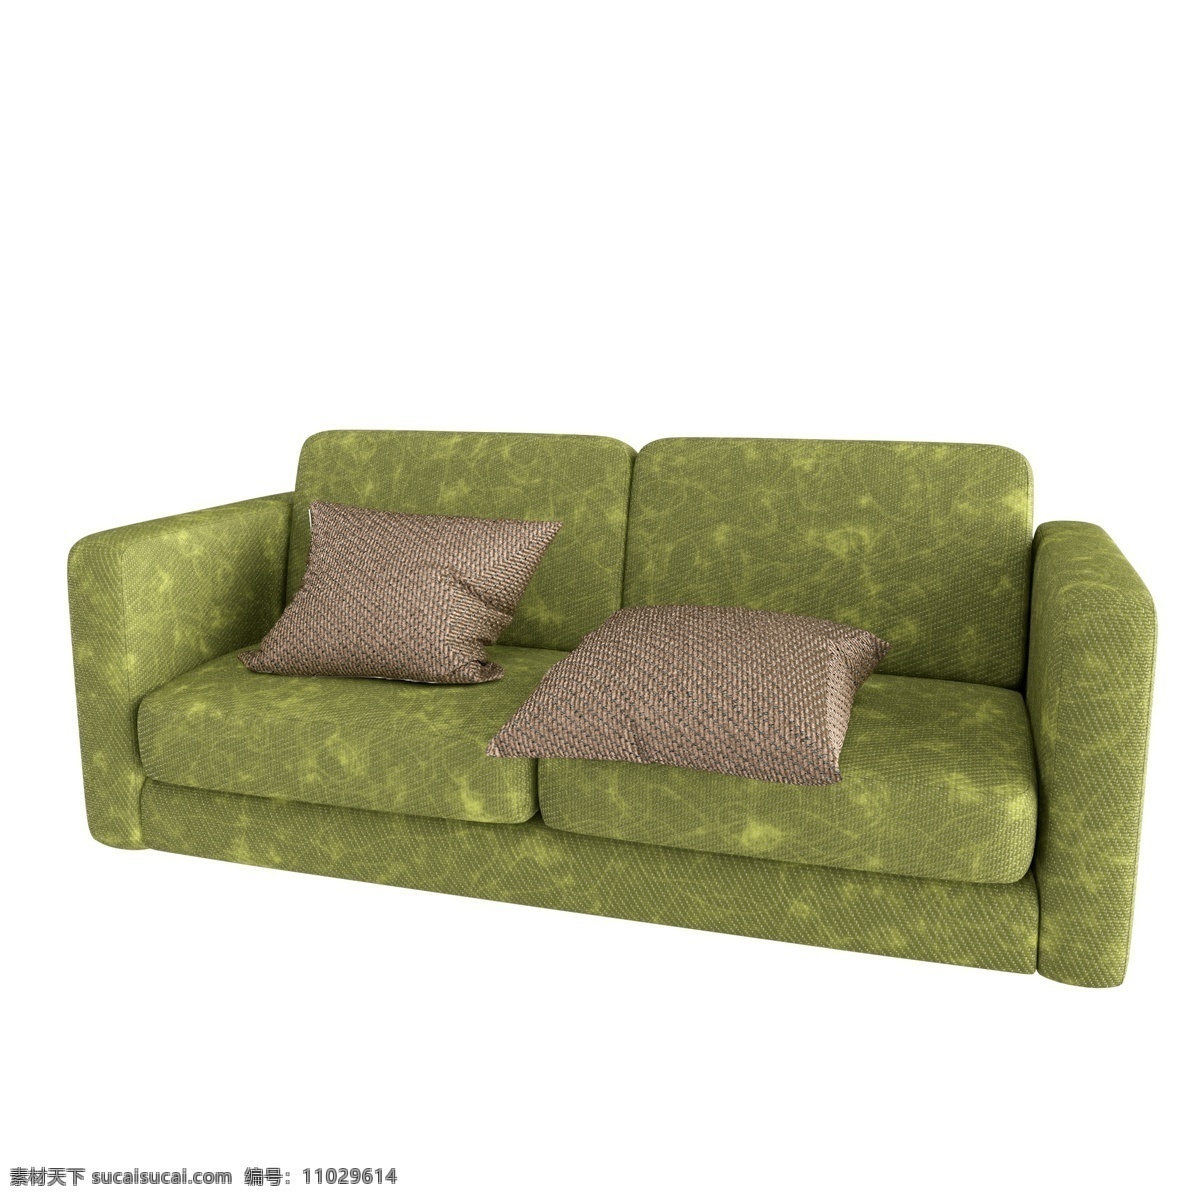 绿色 帆布 长沙 发 小 清新 客厅摆件 家居用品 生活物品 真皮沙发 组合套装 沙发组 长沙发 家具 沙发 真皮 小清新家居